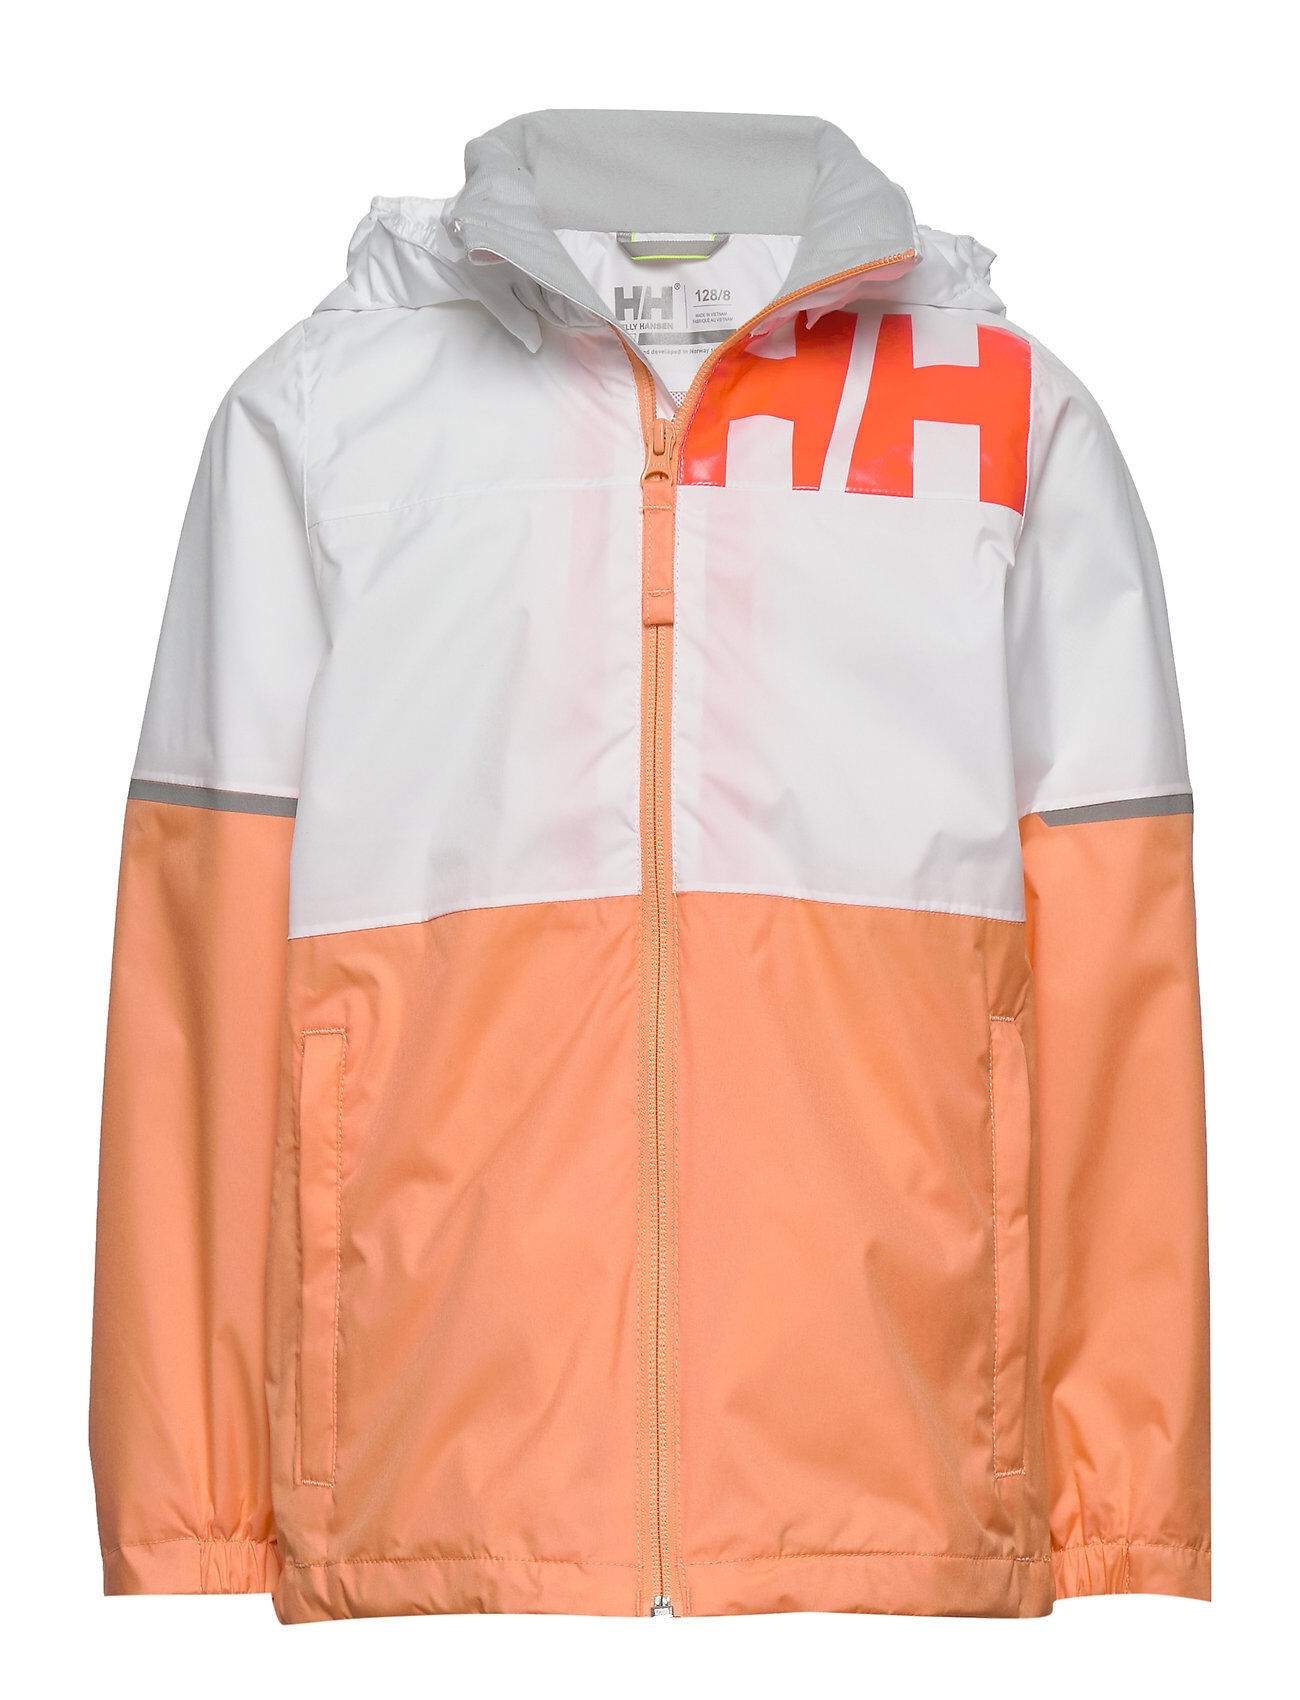 Helly Hansen Jr Pursuit Jacket Outerwear Jackets & Coats Windbreaker Oransje Helly Hansen